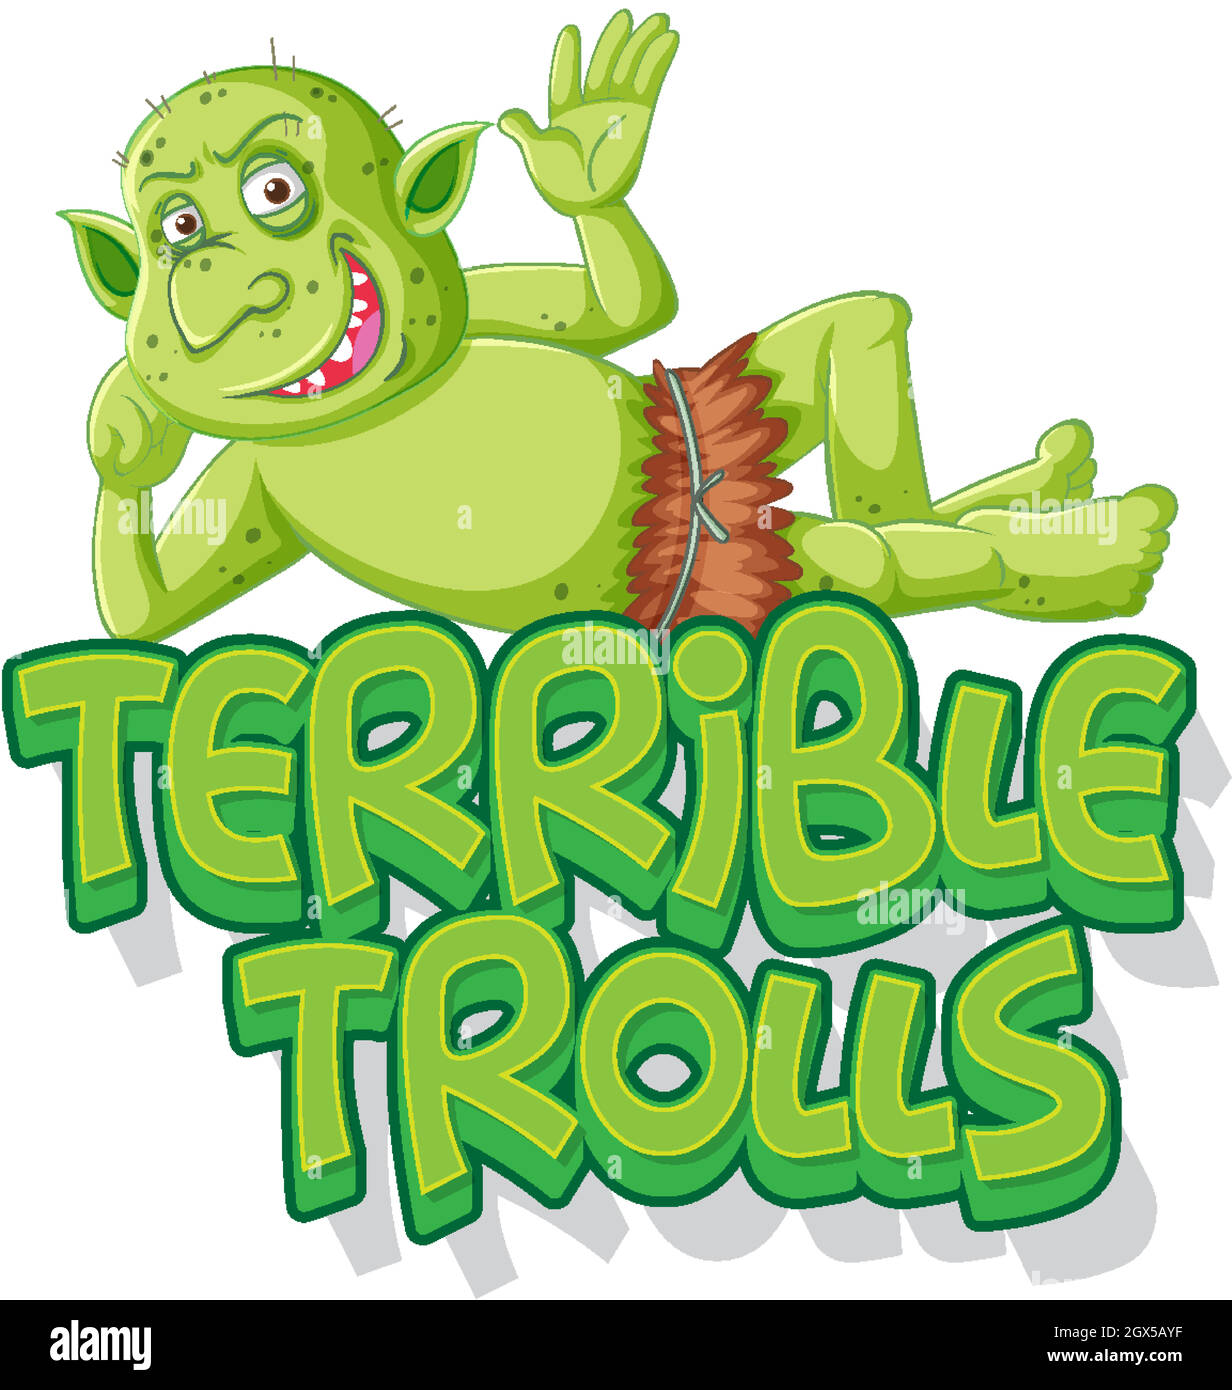 Terribile logo troll su sfondo bianco Illustrazione Vettoriale